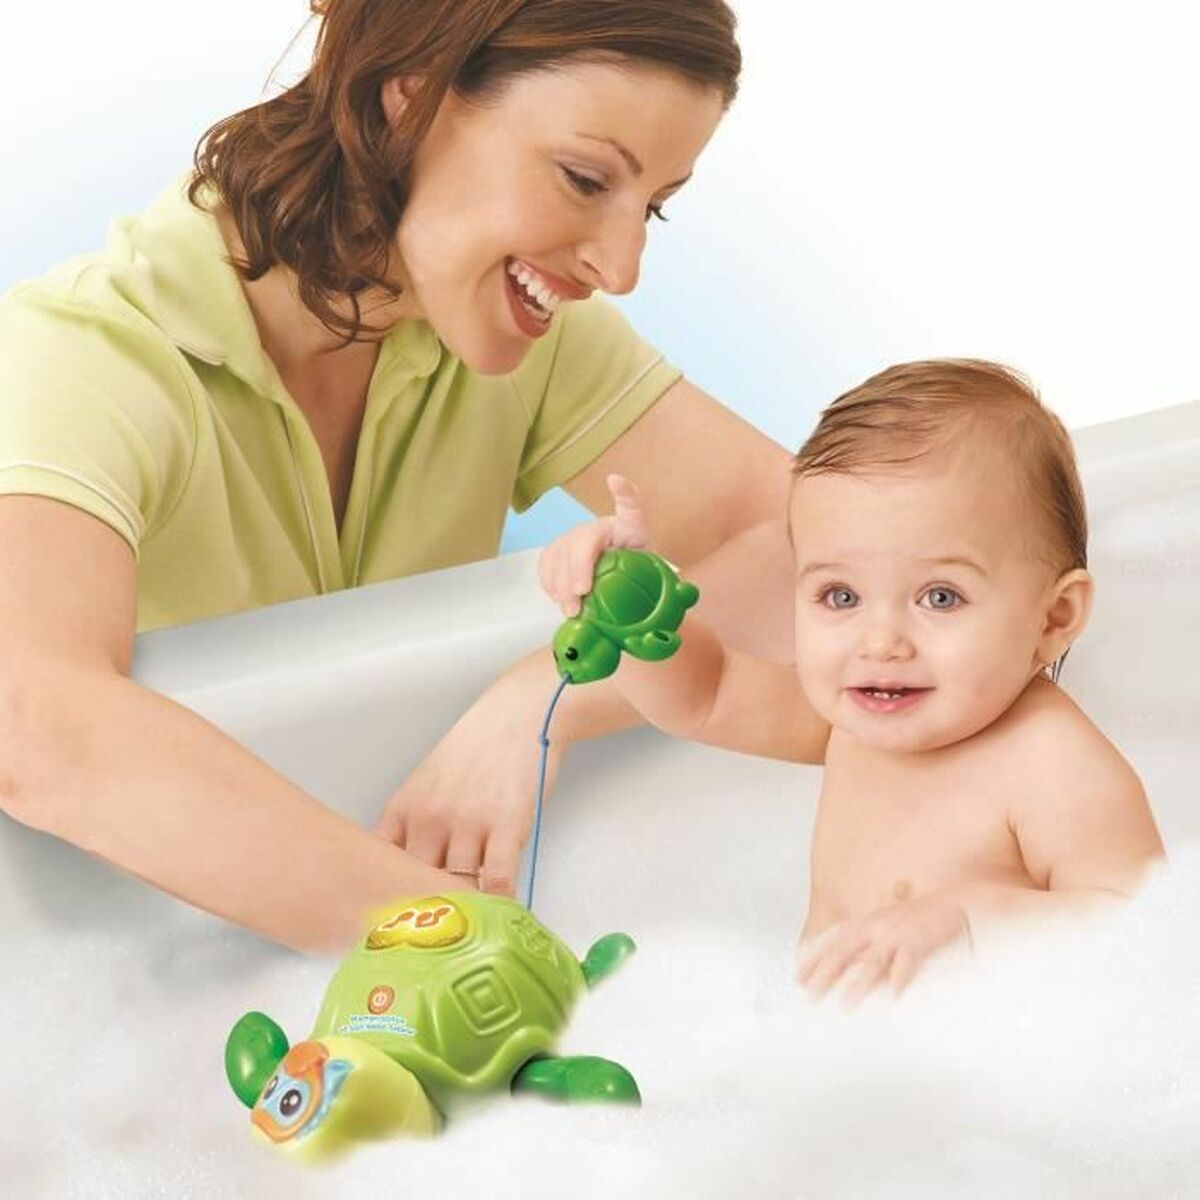 Spielzeug für das Badezimmer Vtech Baby Mother Turtle and Baby Swimmer Wasserspielzeug